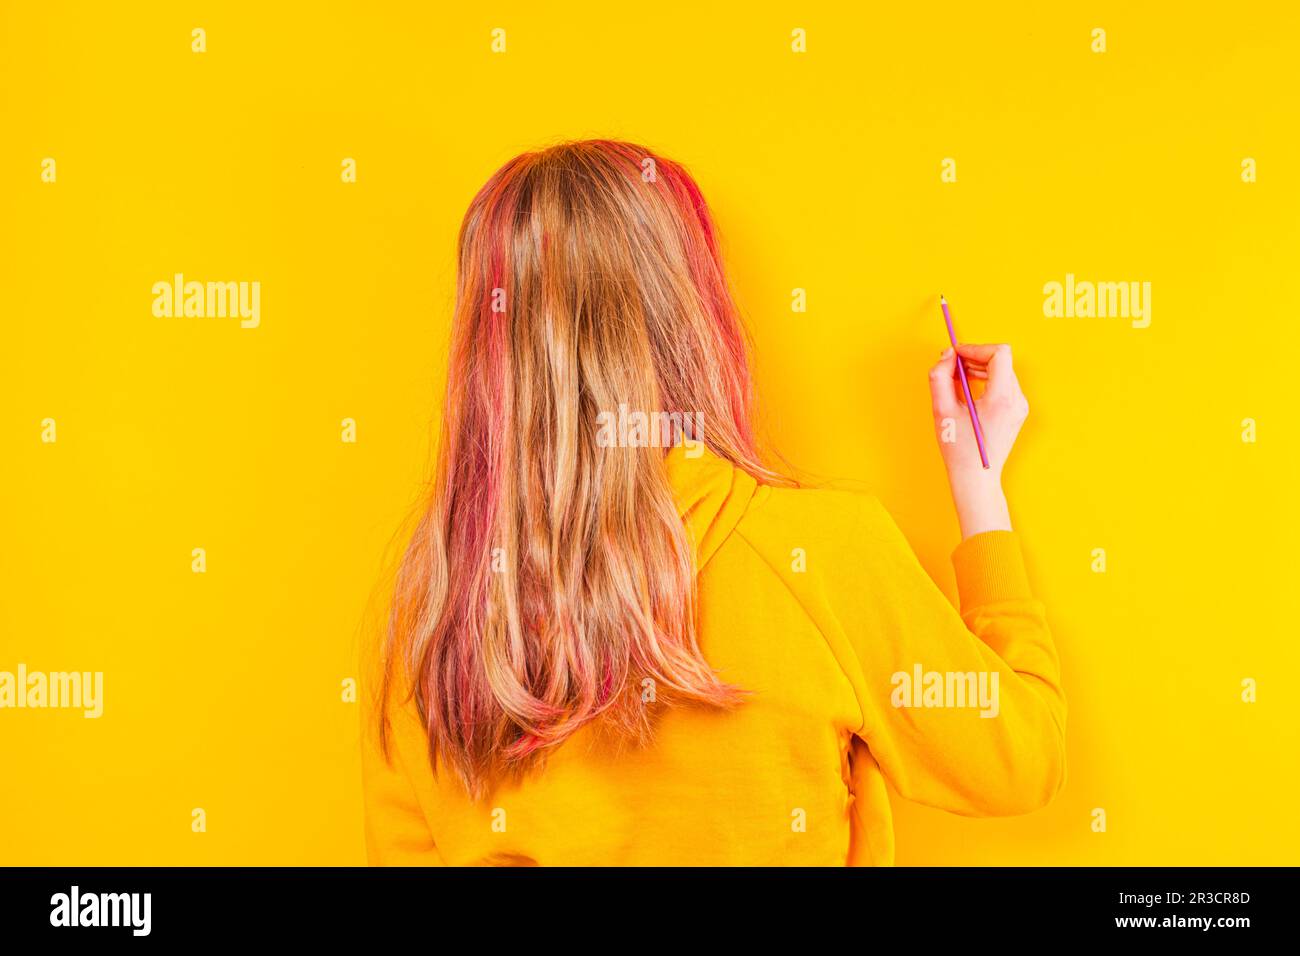 Rückansicht eines jungen Mädchens, das sich auf einen gelben Hintergrund vorbereitet. Das blonde Mädchen in einer gelben Jacke hat einen Bleistift Stockfoto